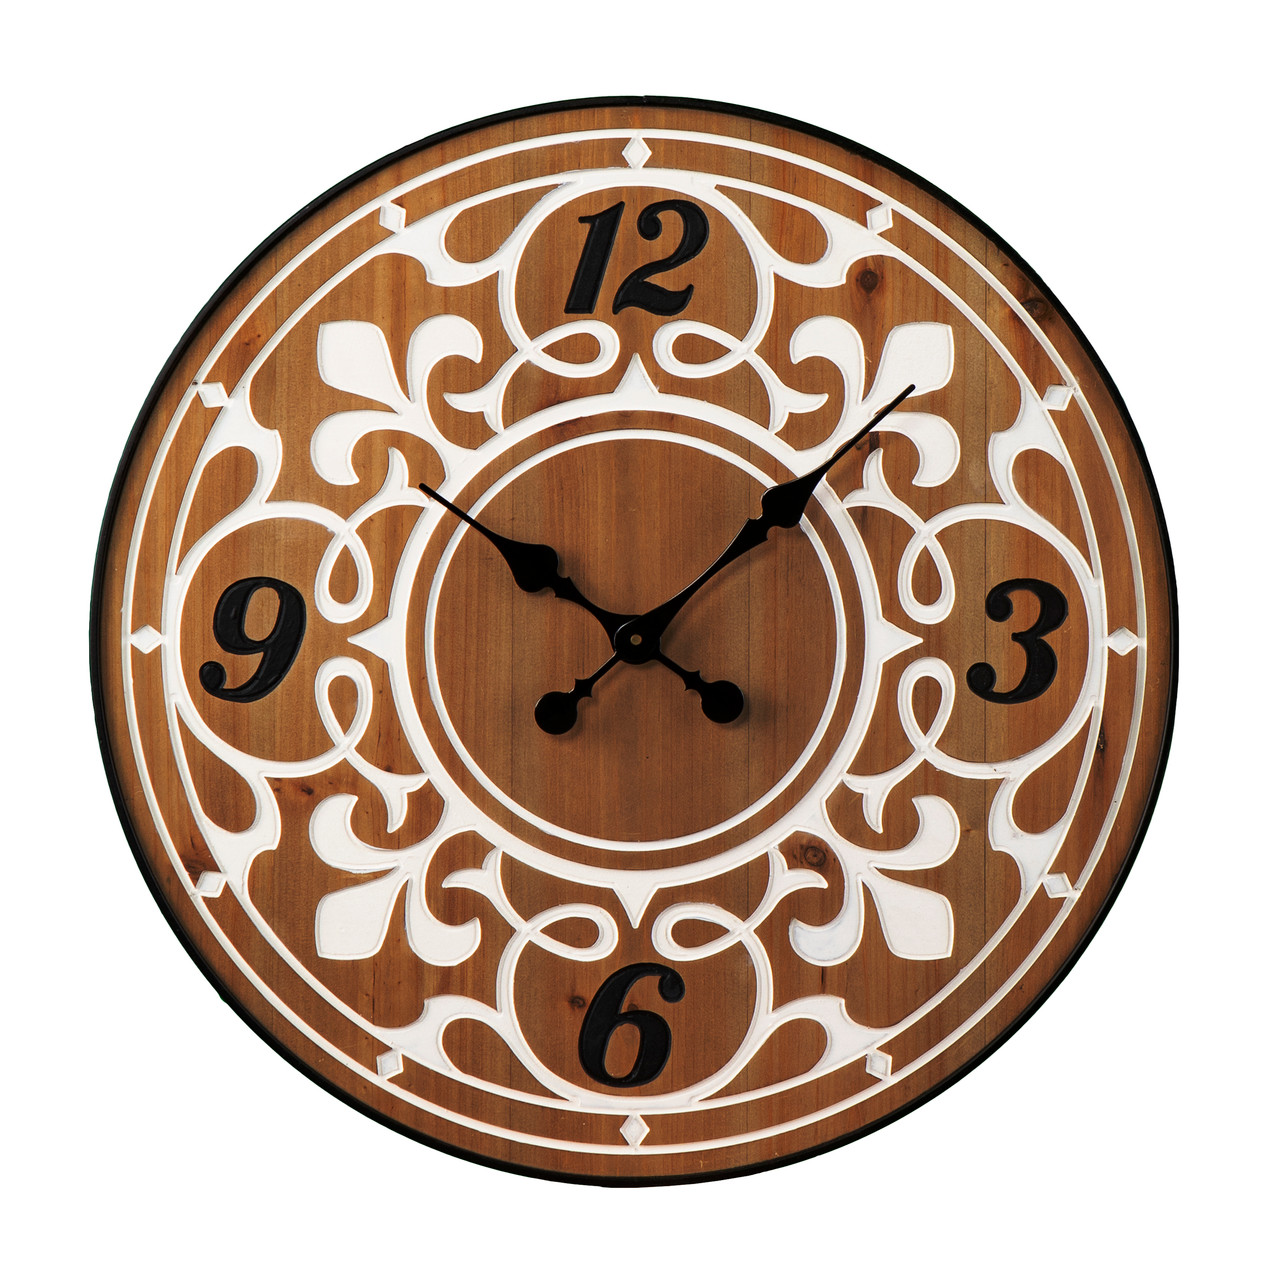 April Wayfinder Clock